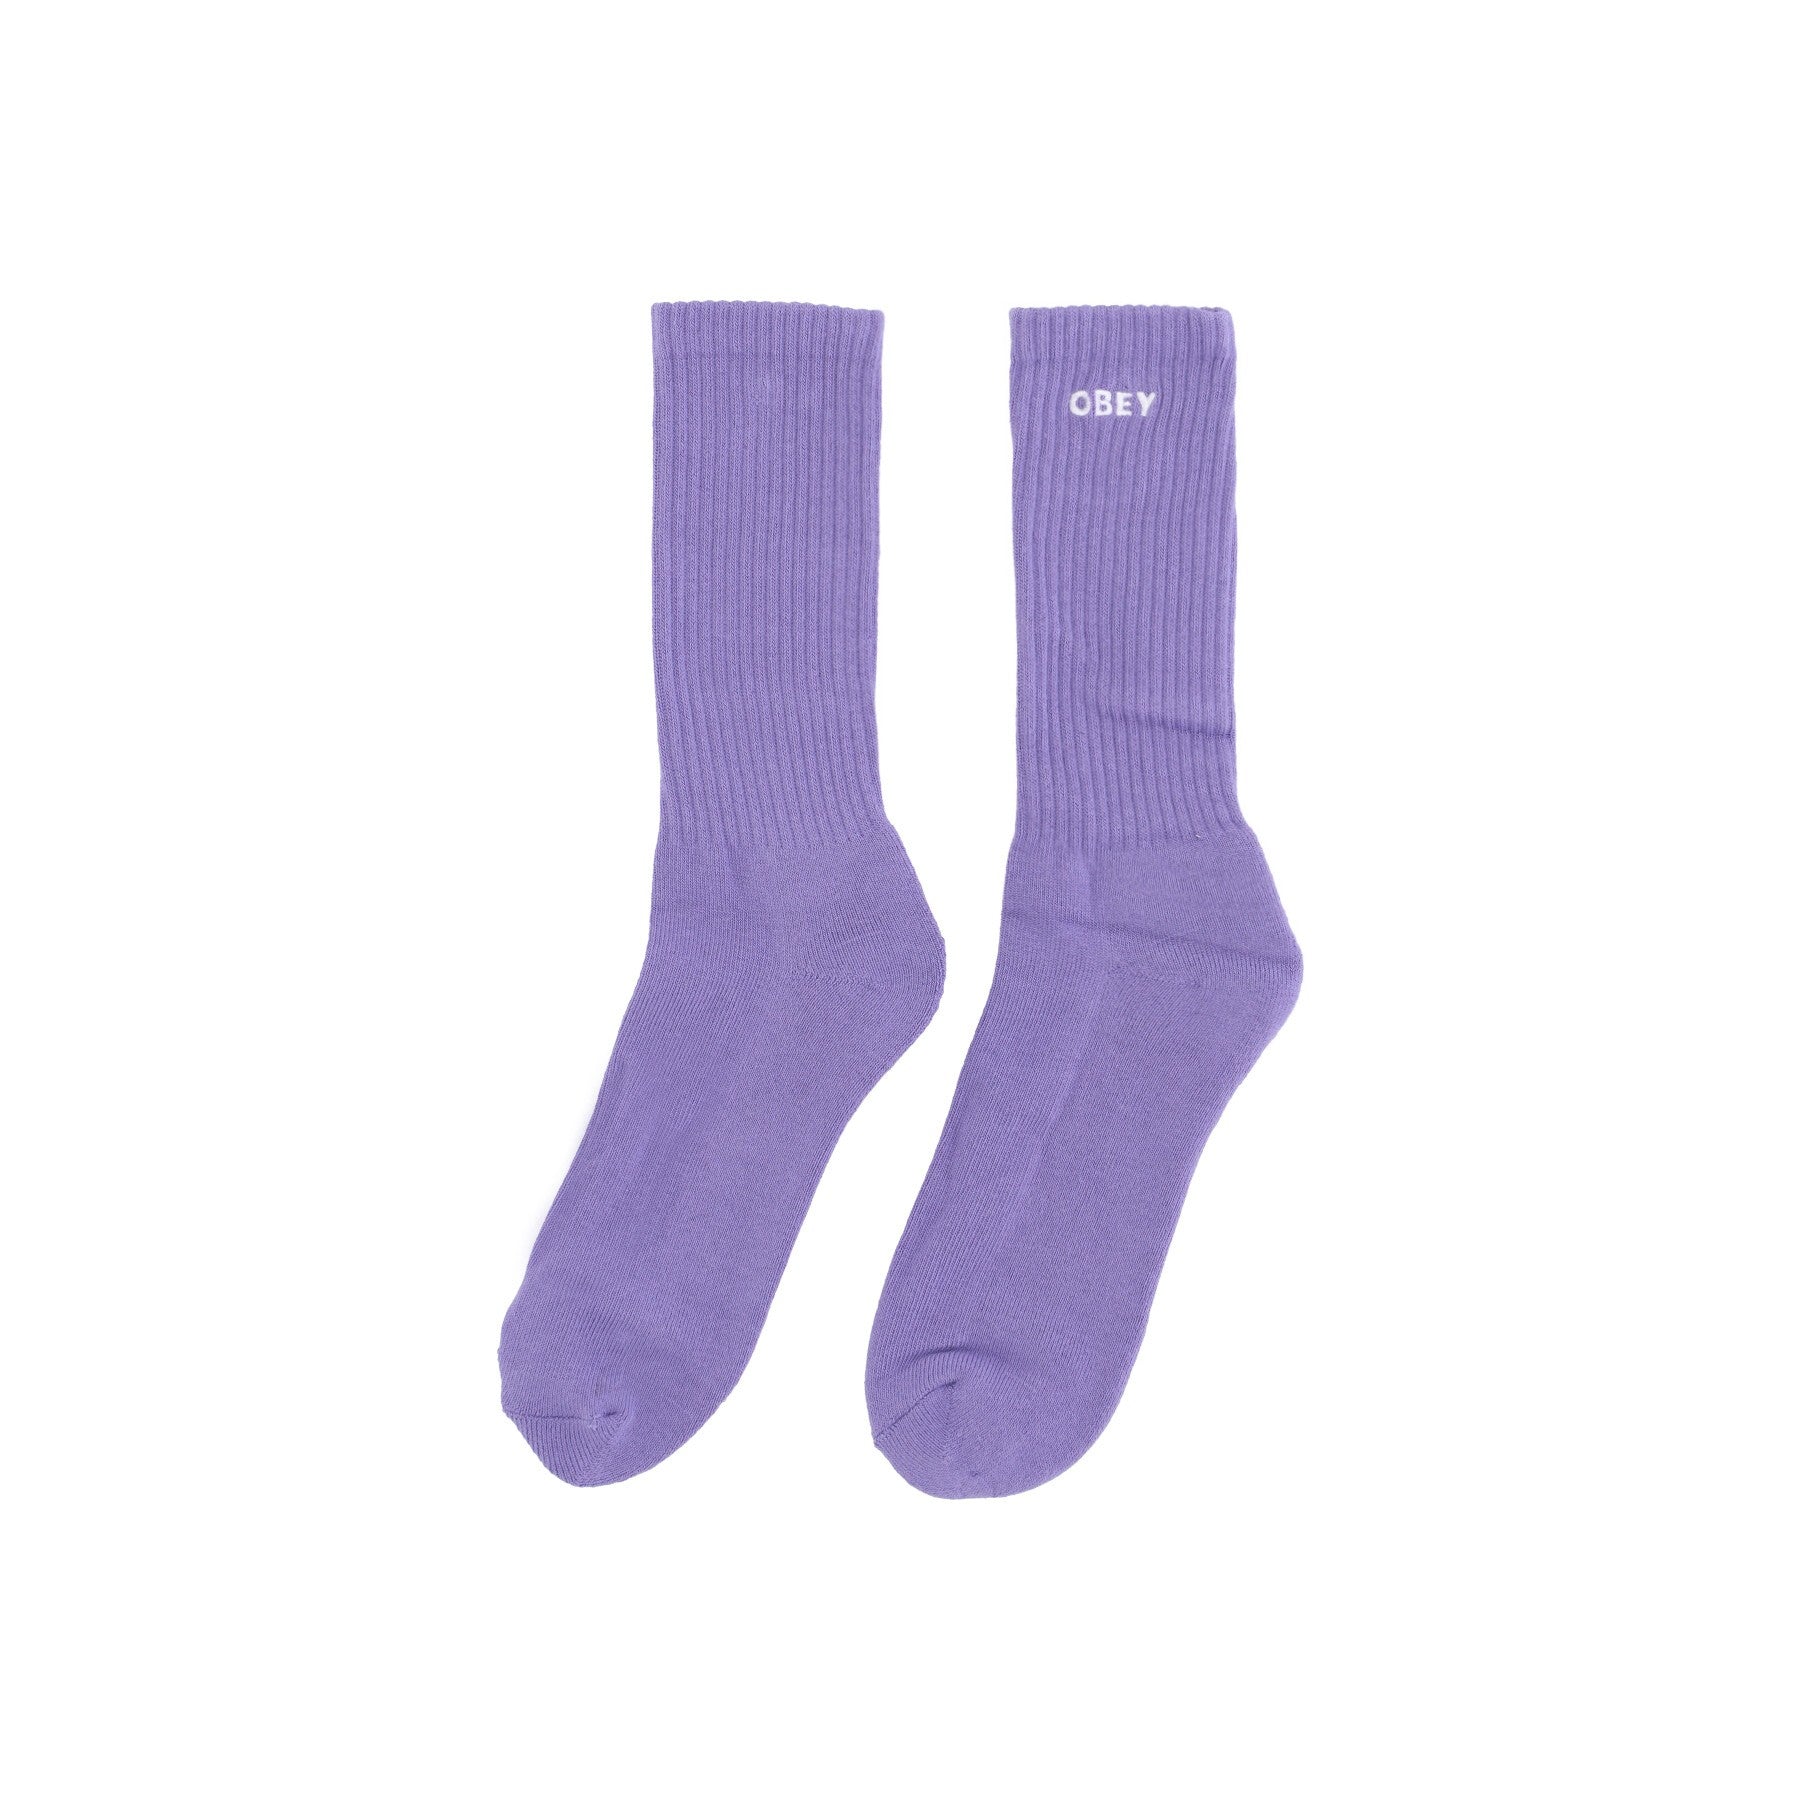 Obey, Calza Media Uomo Bold Socks, Digital Violet